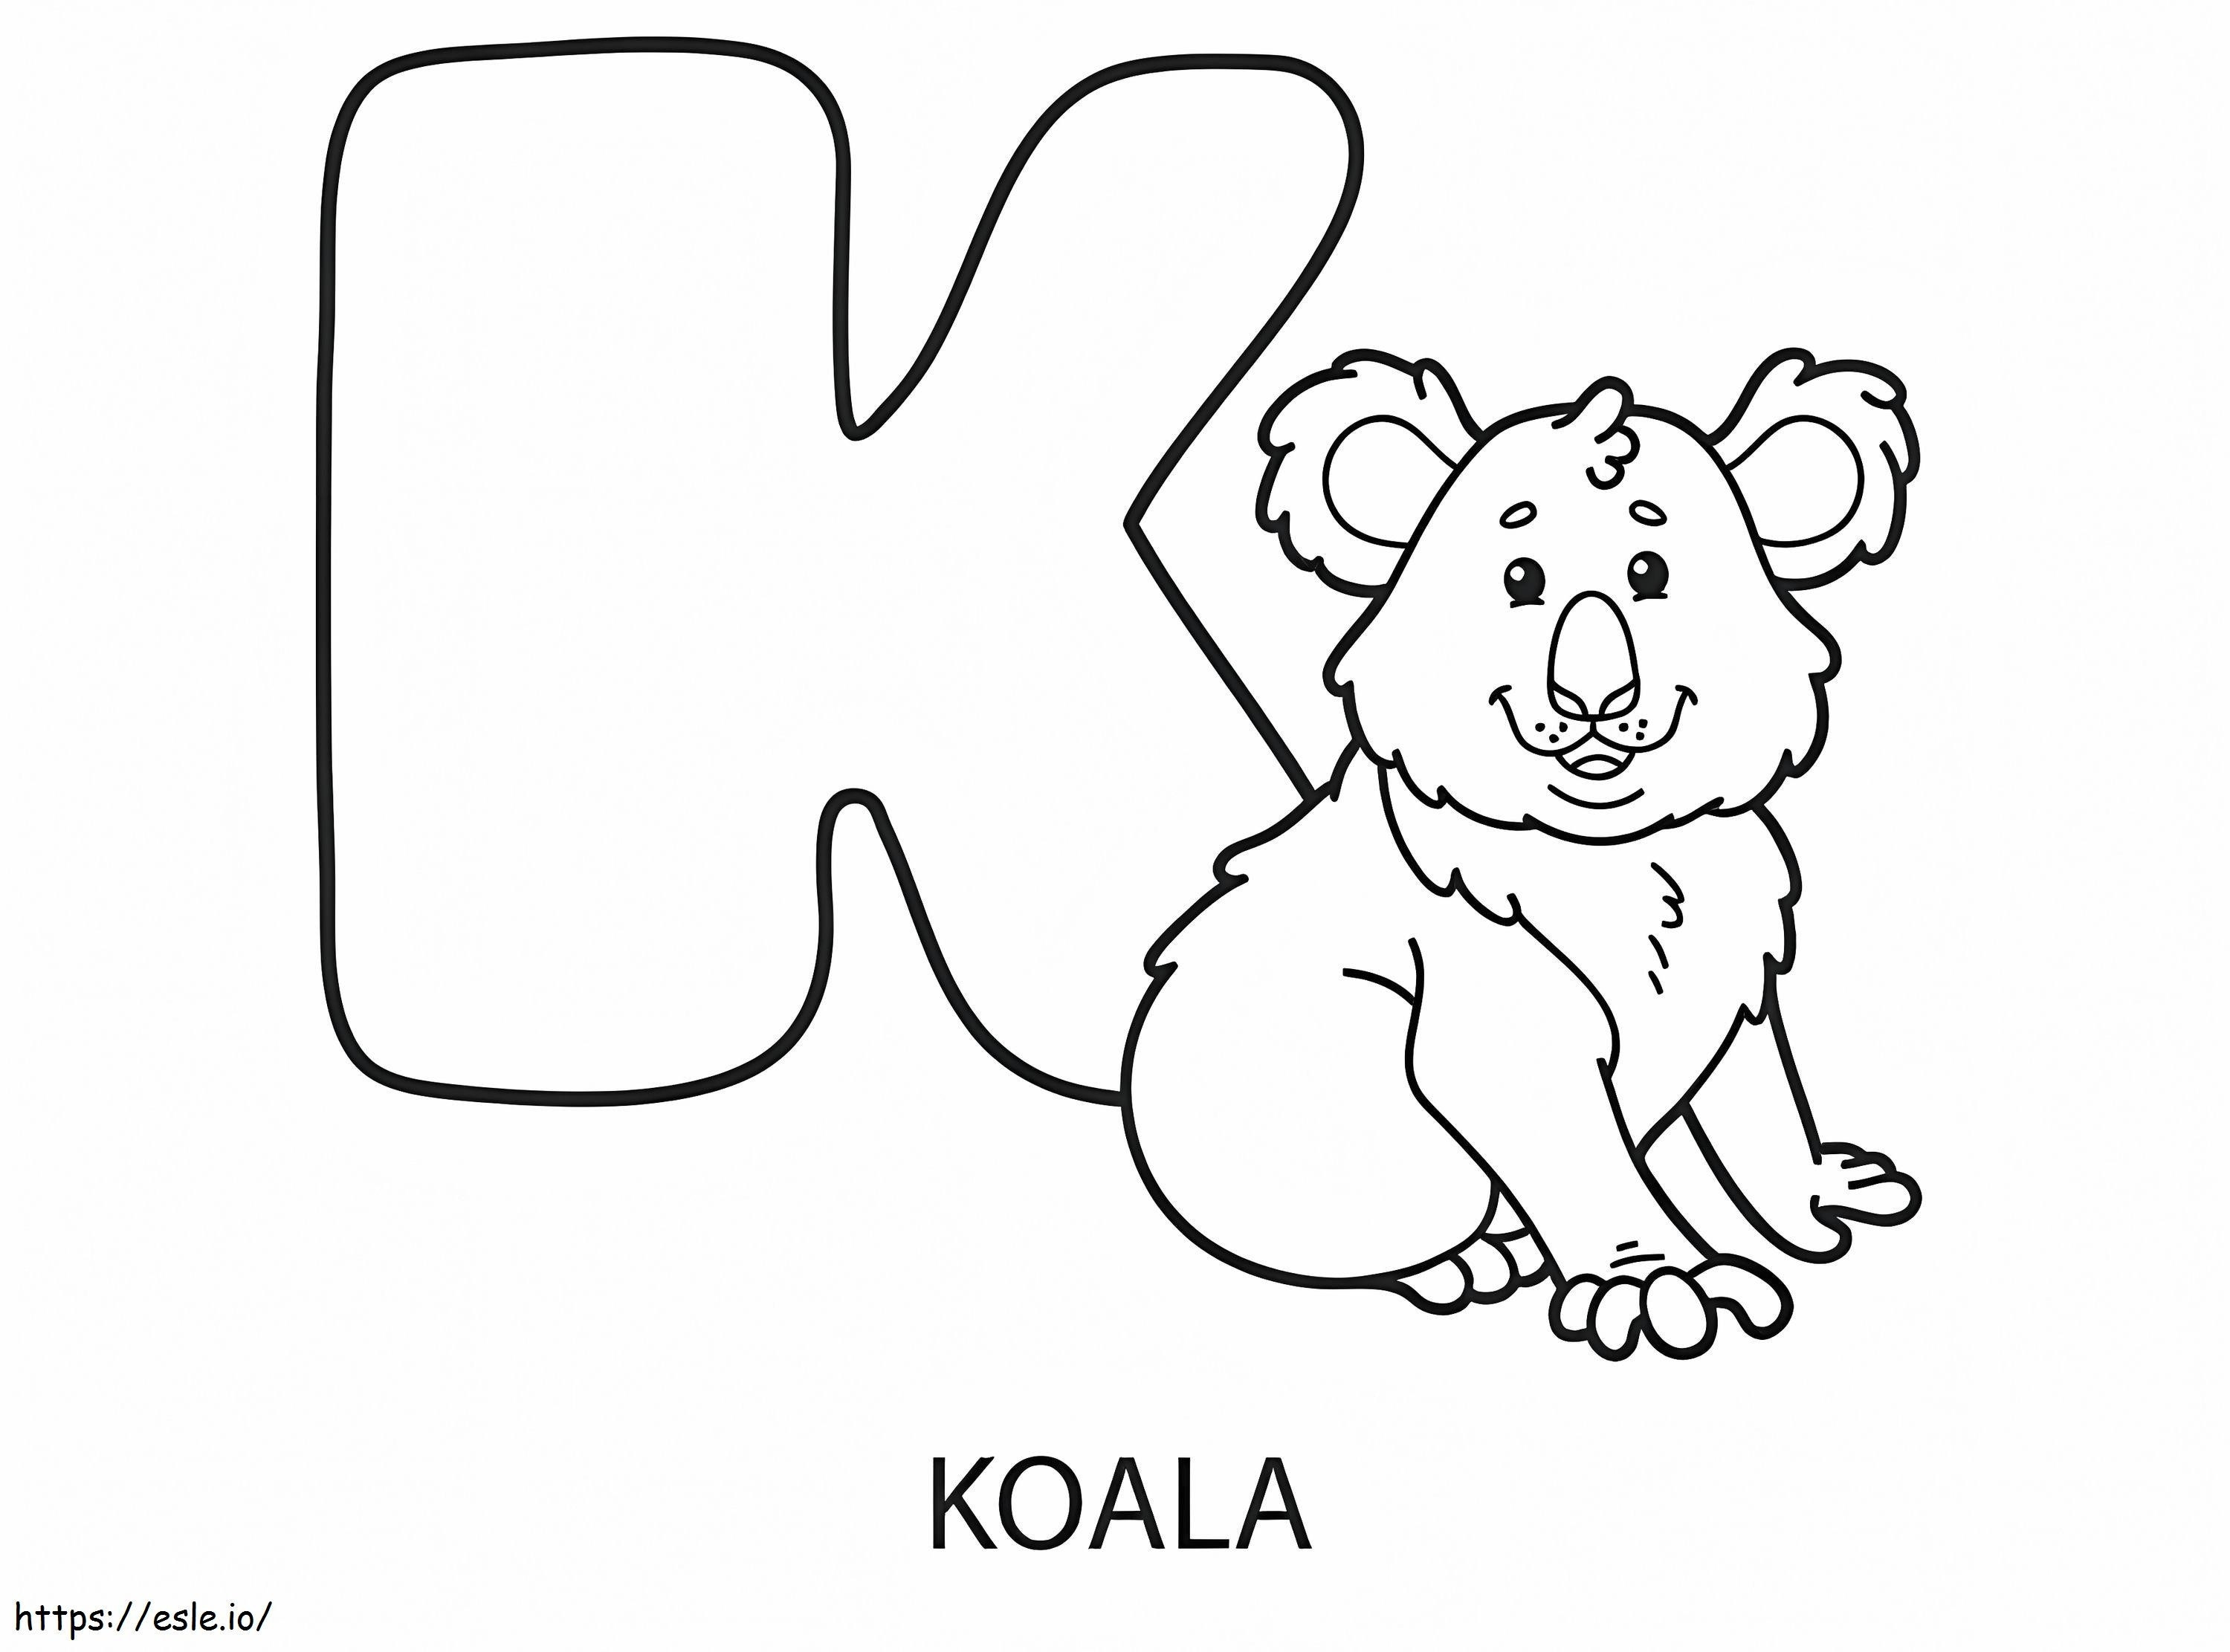 Koala için K harfi boyama